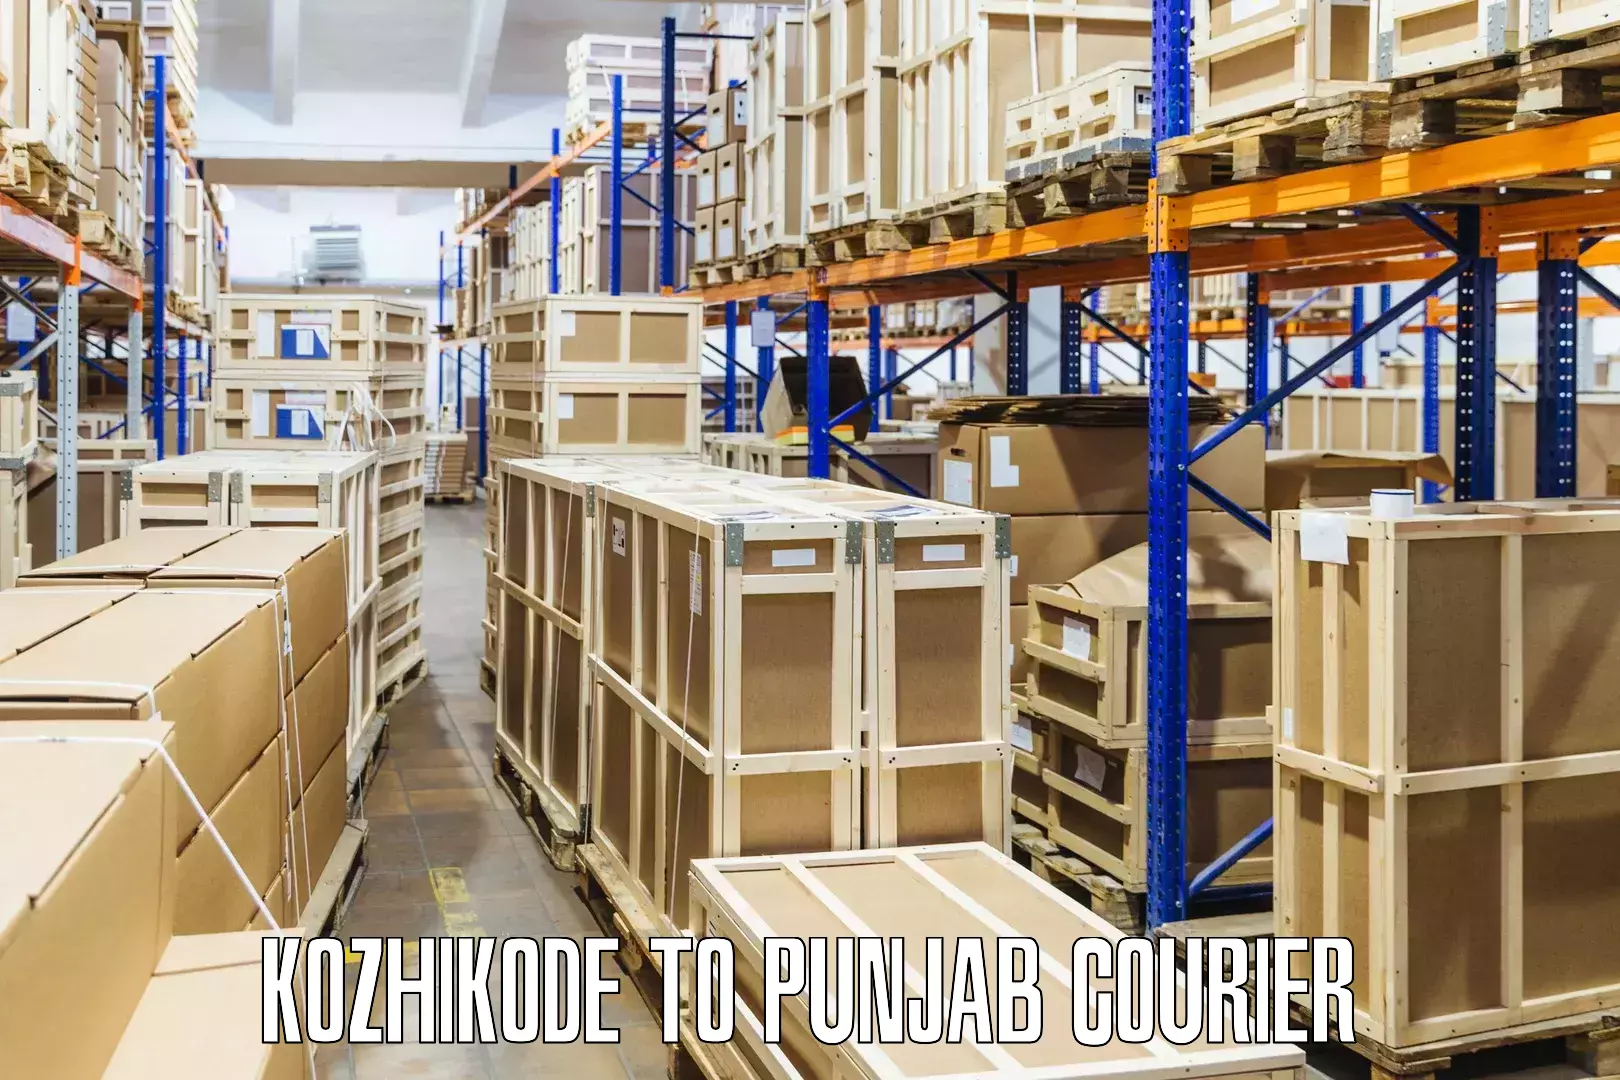 High-capacity shipping options Kozhikode to Kapurthala